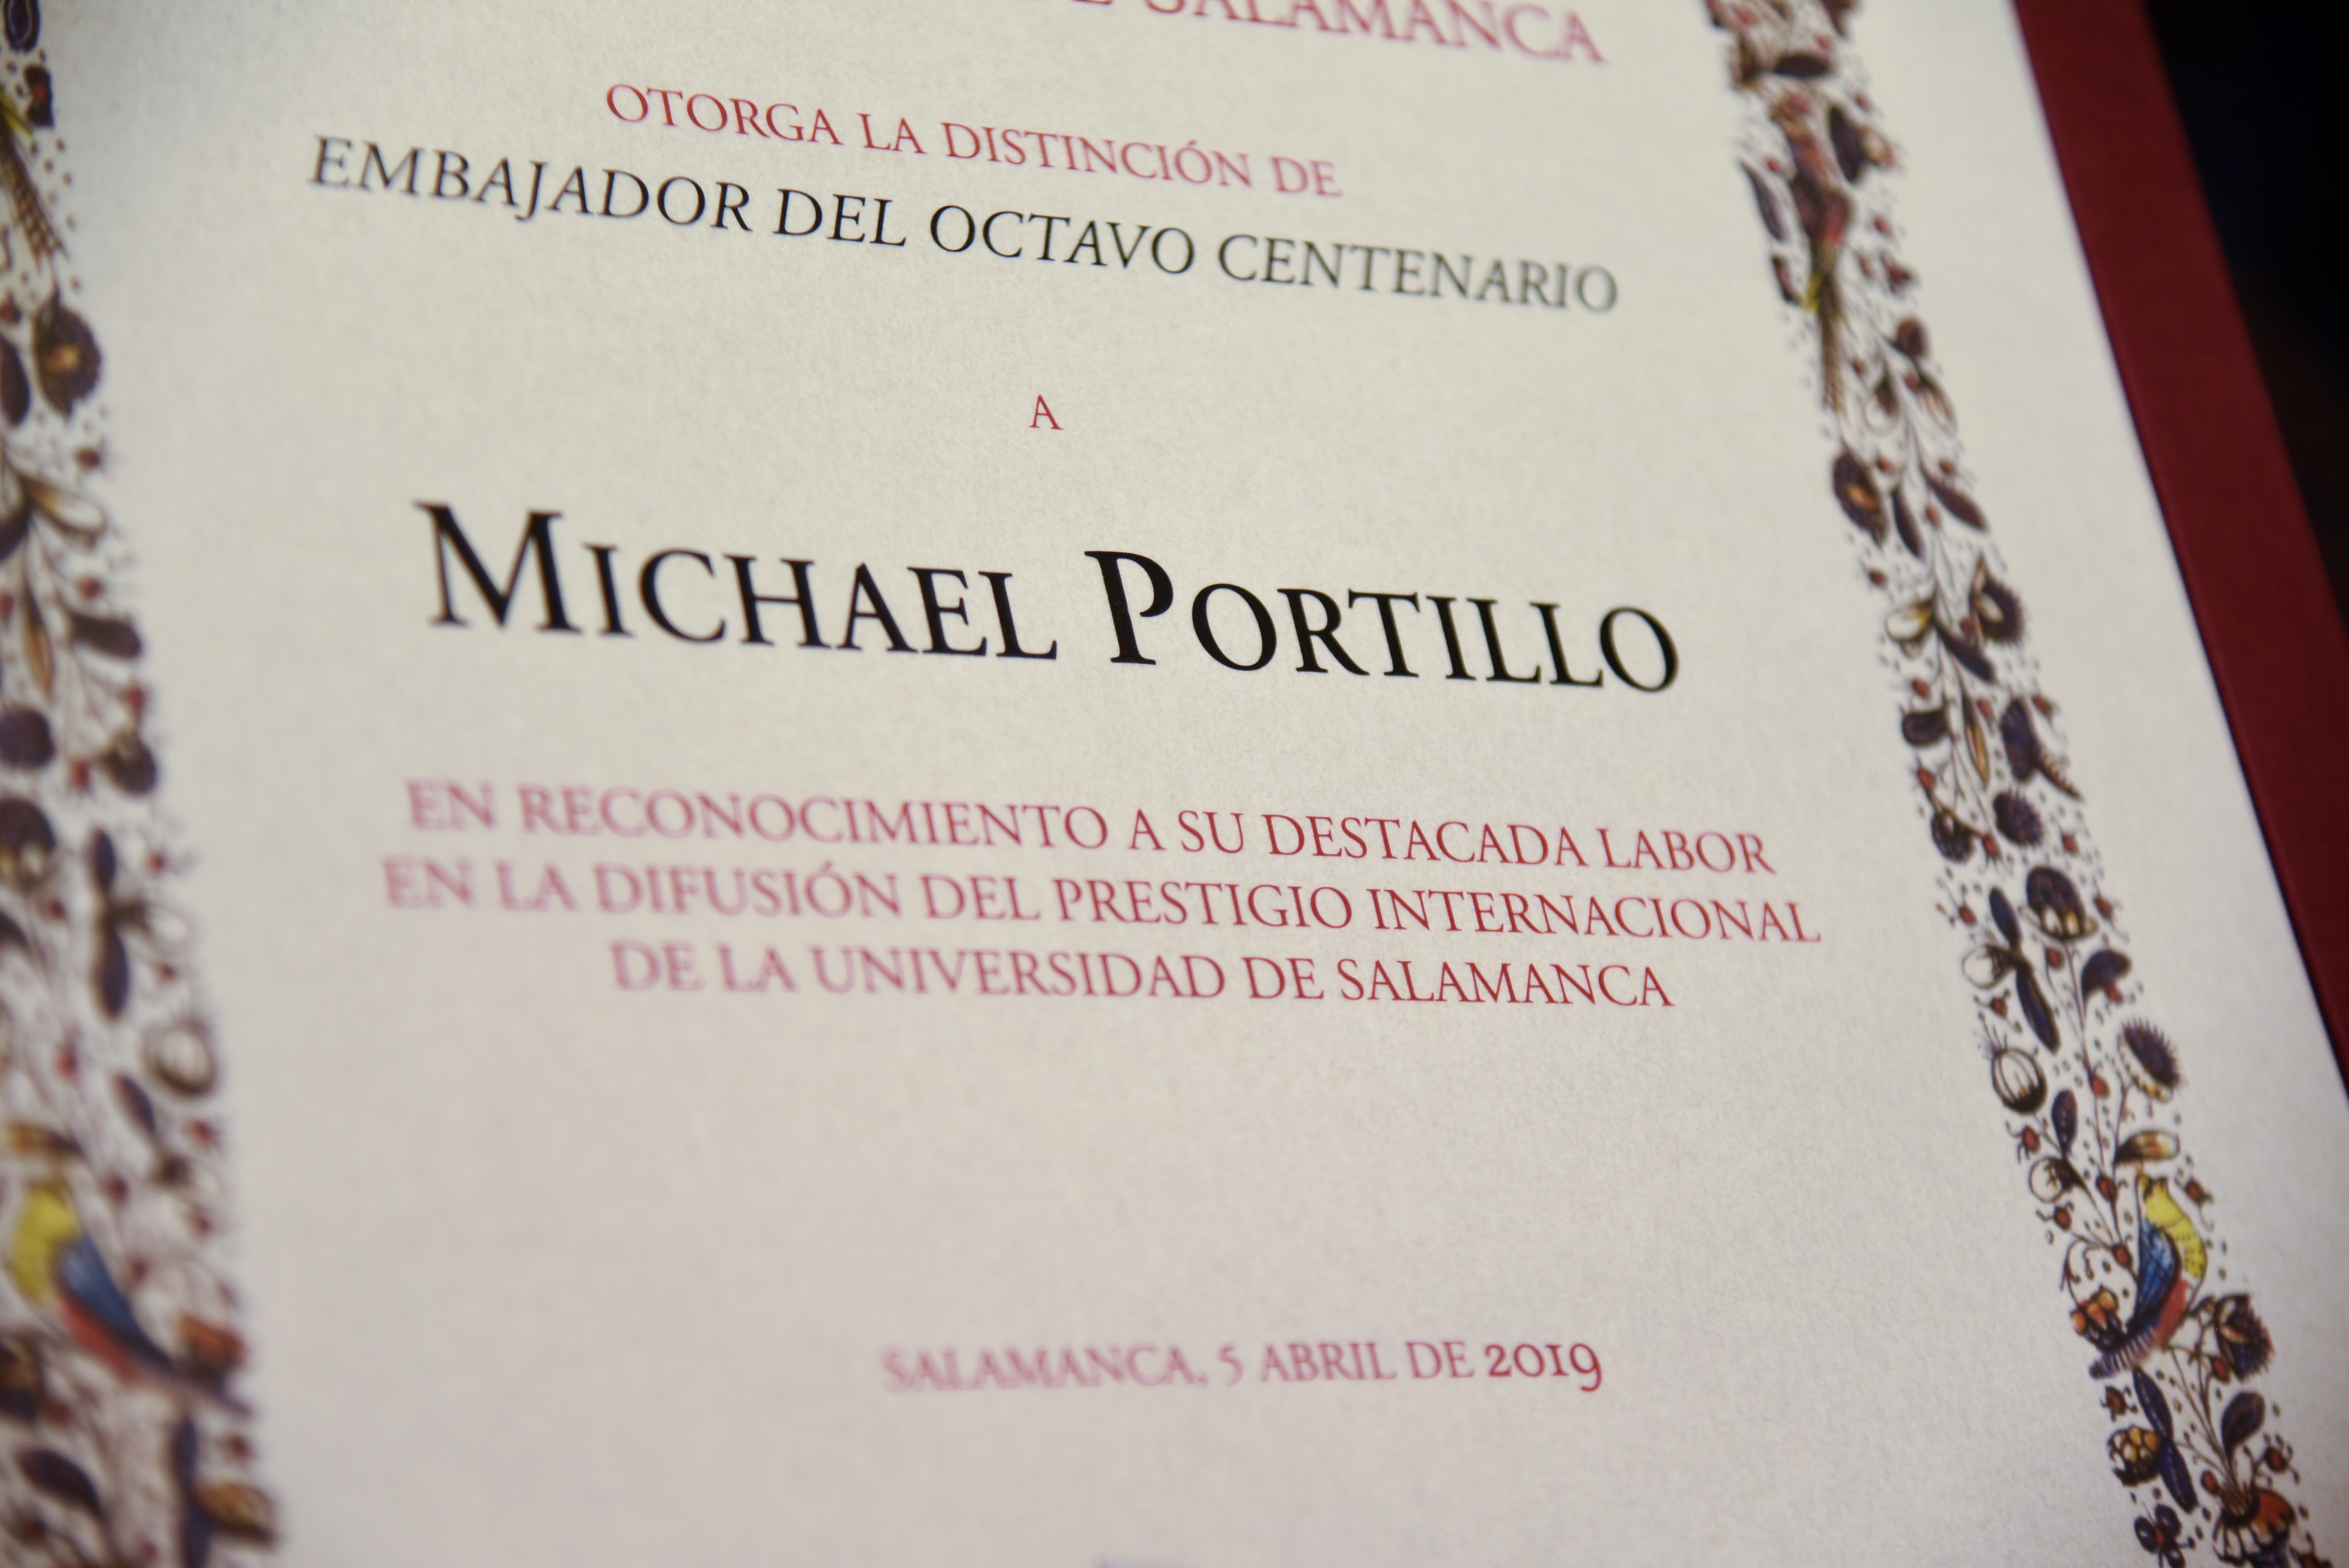 El rector nombra a Michael Portillo embajador del VIII Centenario de la Universidad de Salamanca